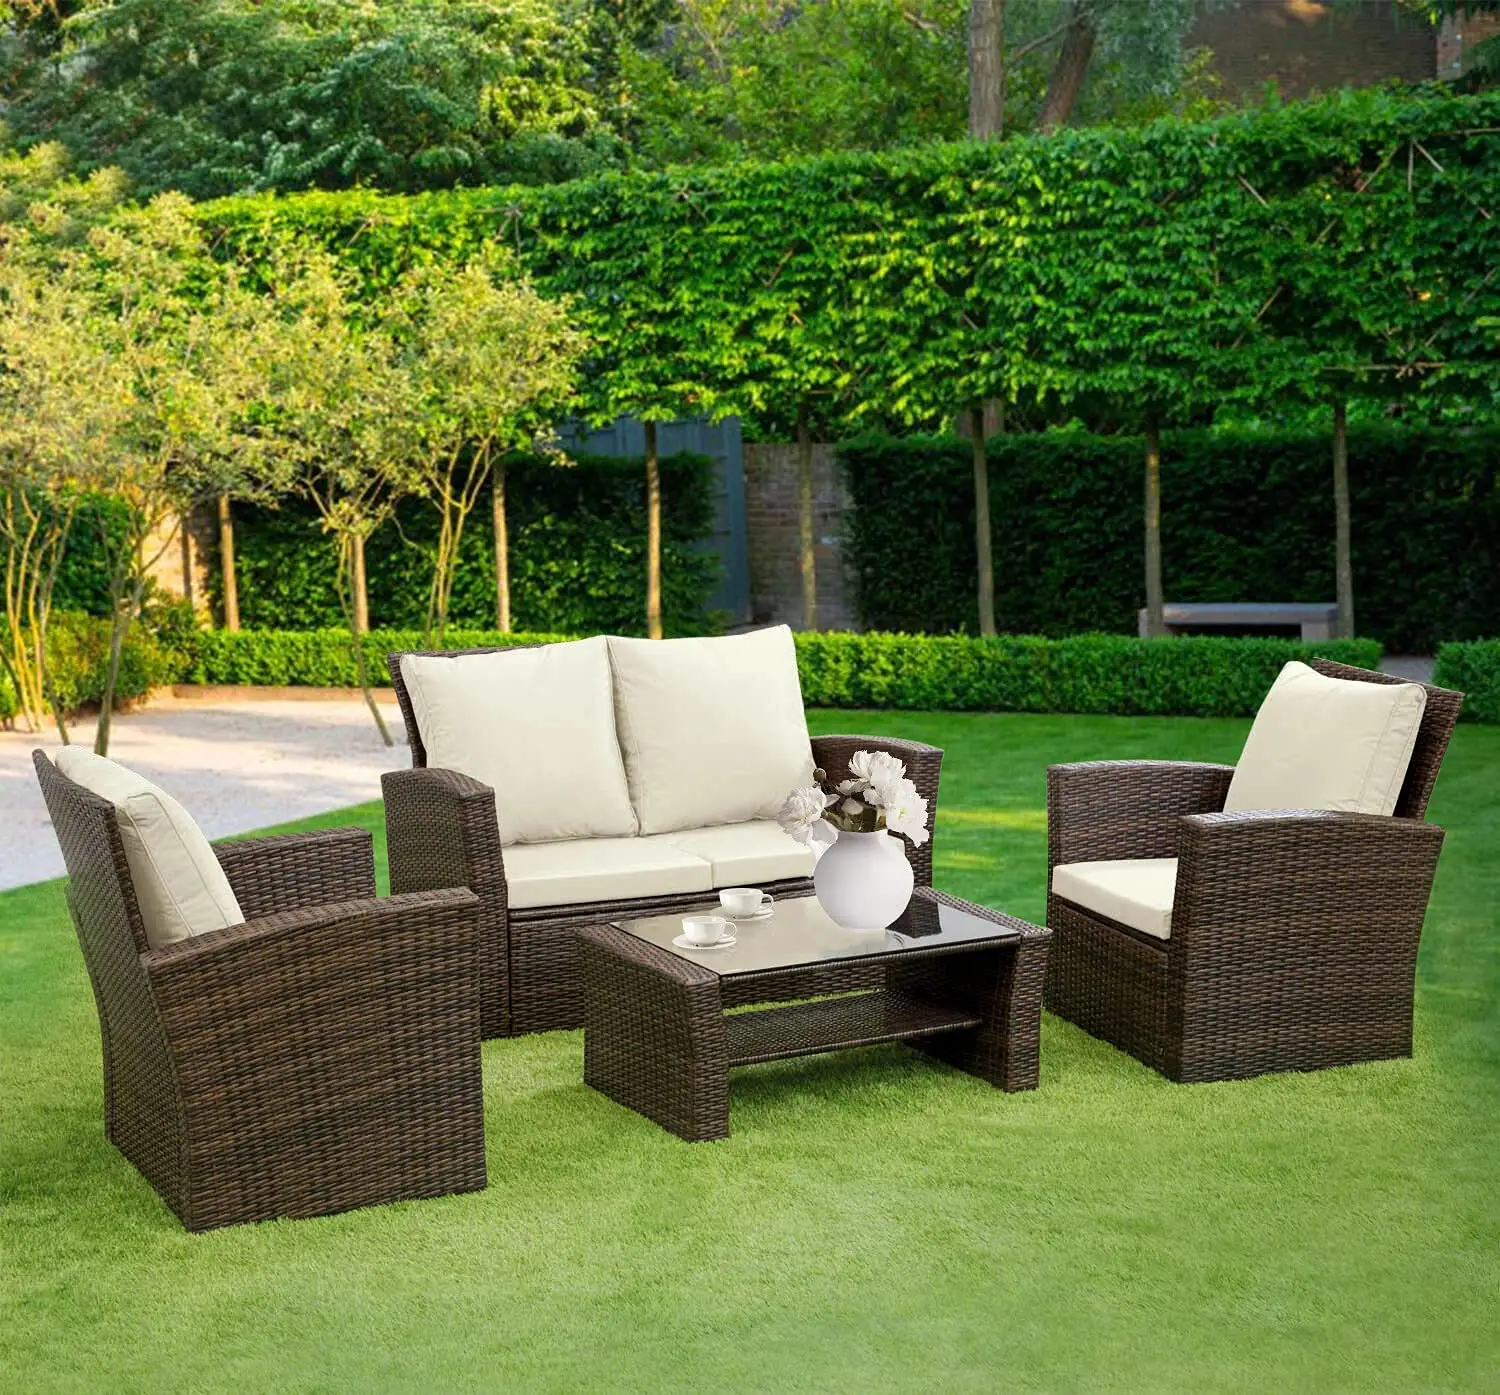 Conjunto de sofá y sillón de ratán para exteriores, Patio, jardín, invernadero, 4 plazas, con cojines y mesa de centro